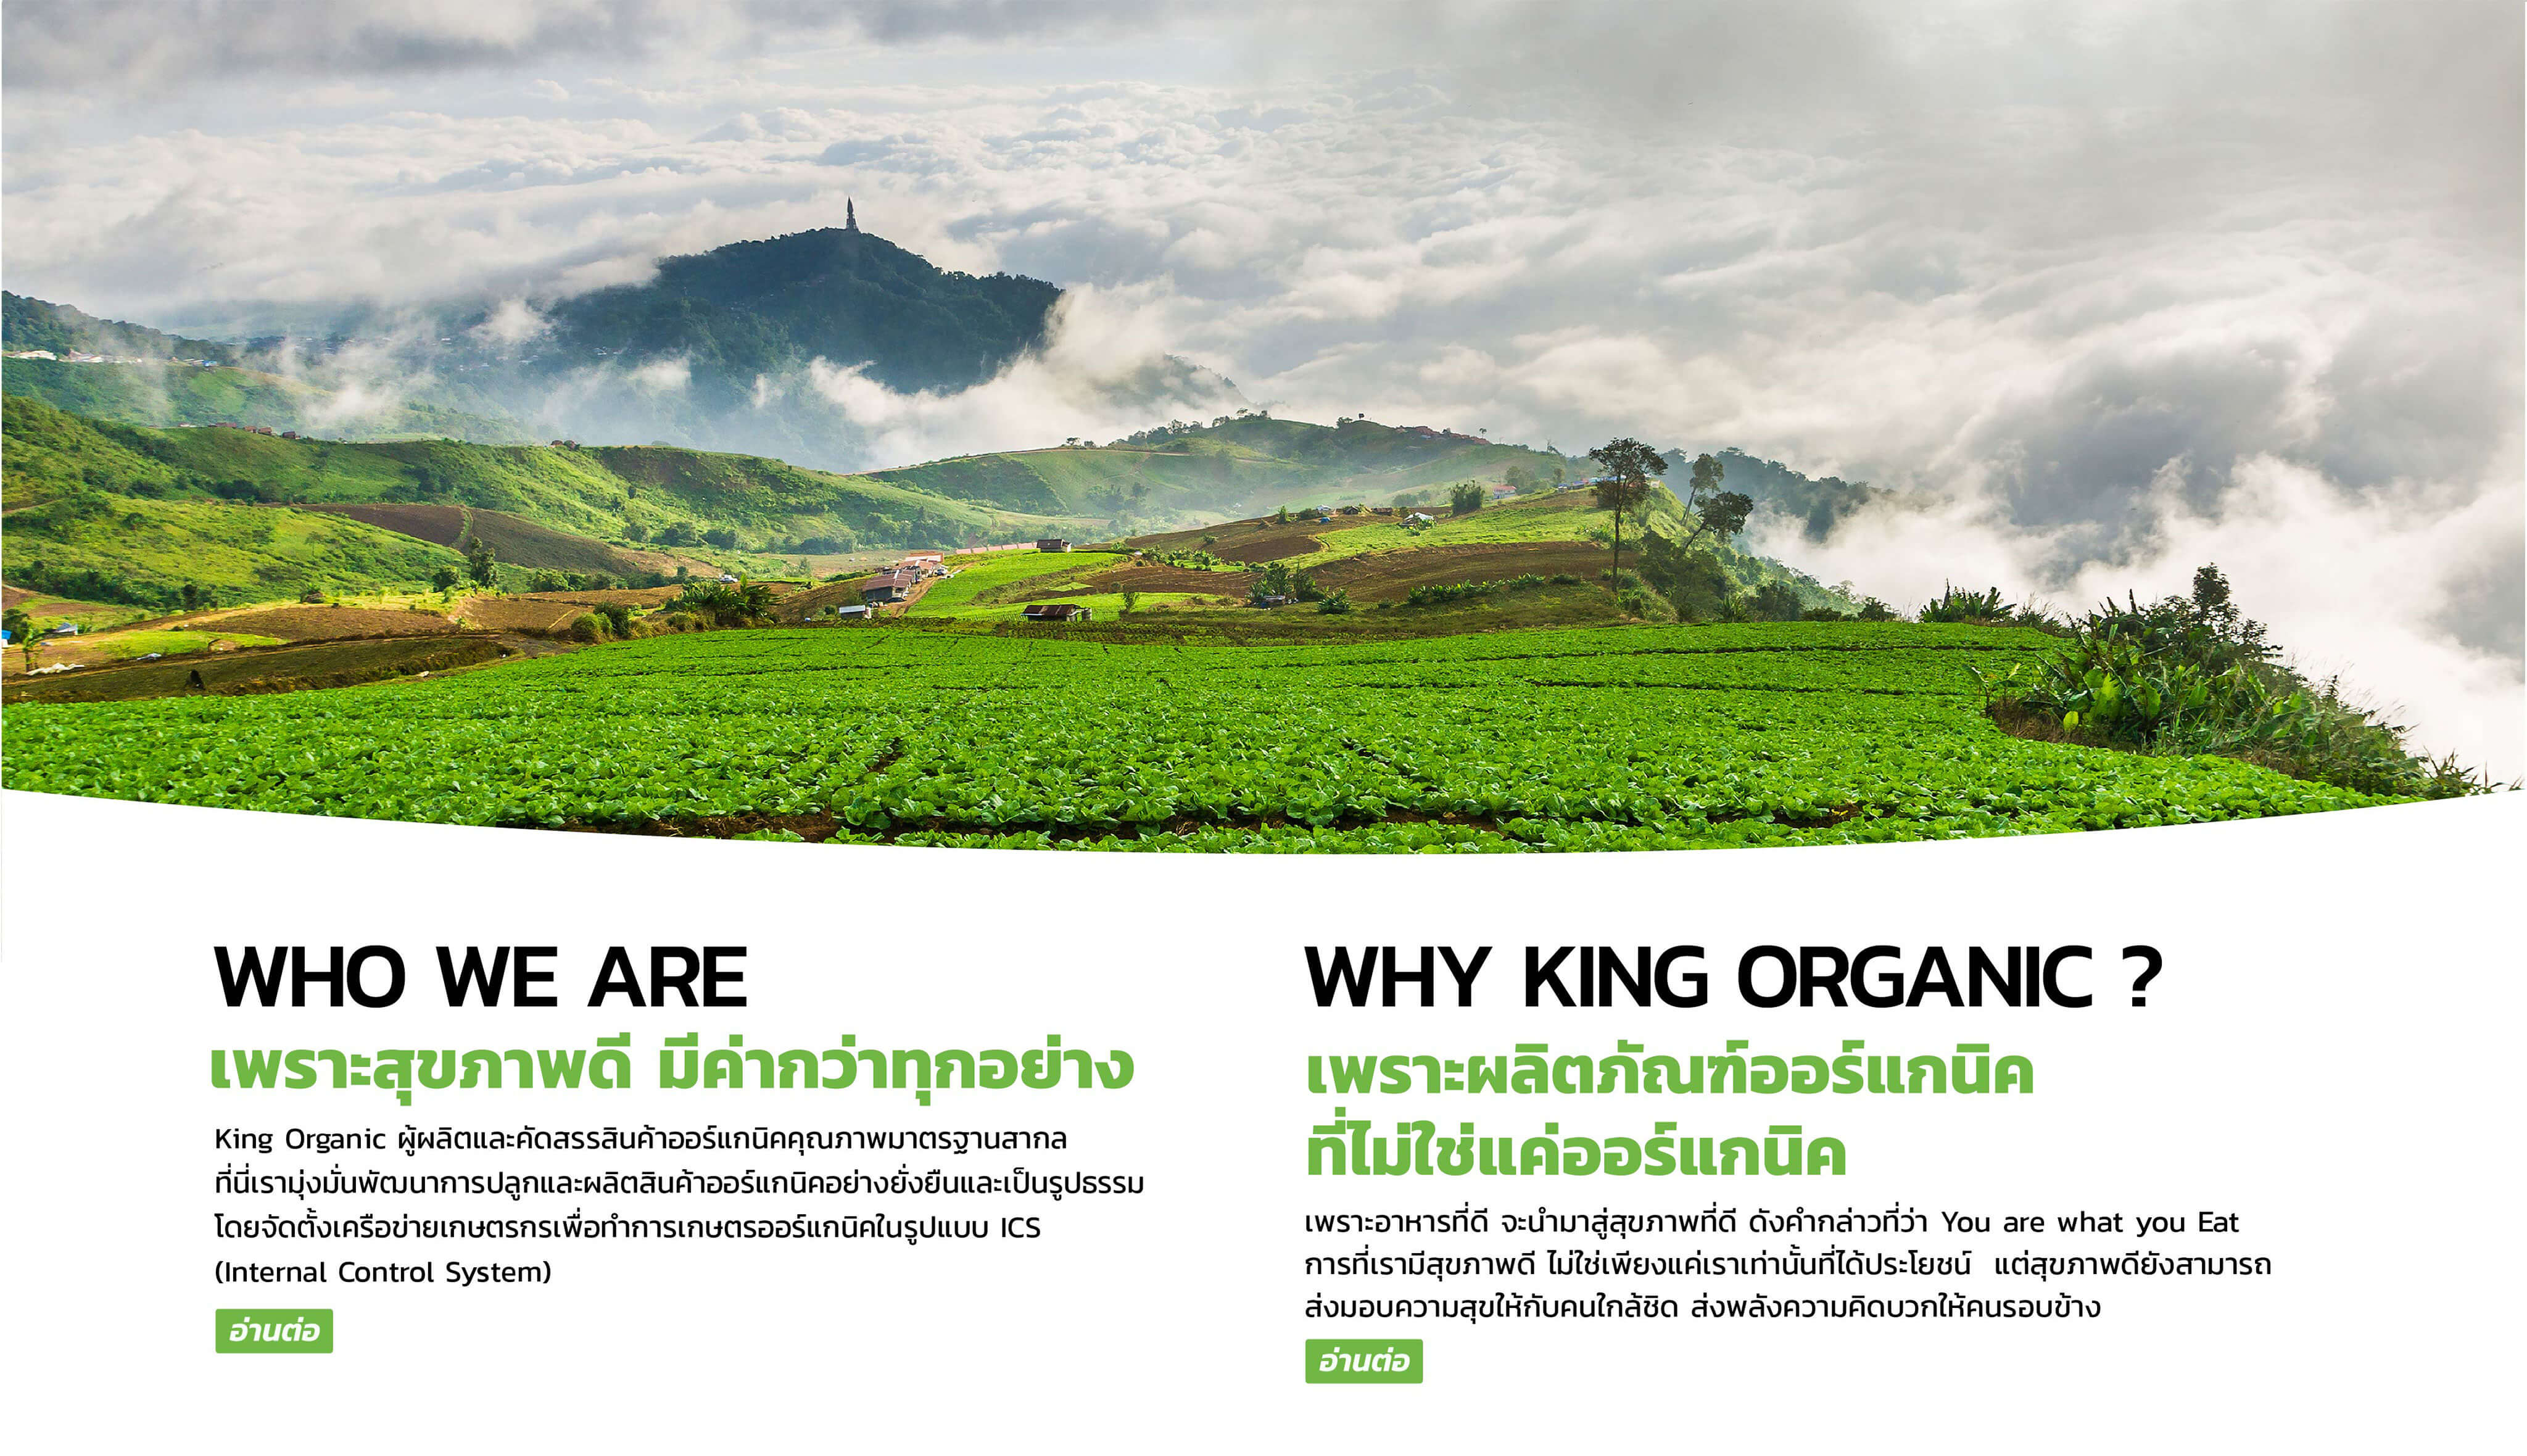 ที่ King Organic เรามุ่งมั่น ส่งเสริม สร้างสรรค์ผลิตภัณฑ์ทางการเกษตรที่สะอาด ปลอดภัย เป็นมิตรต่อสุขภาพ และที่สำคัญ ต้องเป็นมิตรกับสิ่งแวดล้อม เพราะอาหารที่ดี จะนำมาสู่สุขภาพที่ดี ดังคำกล่าวที่ว่า You are what you Eat